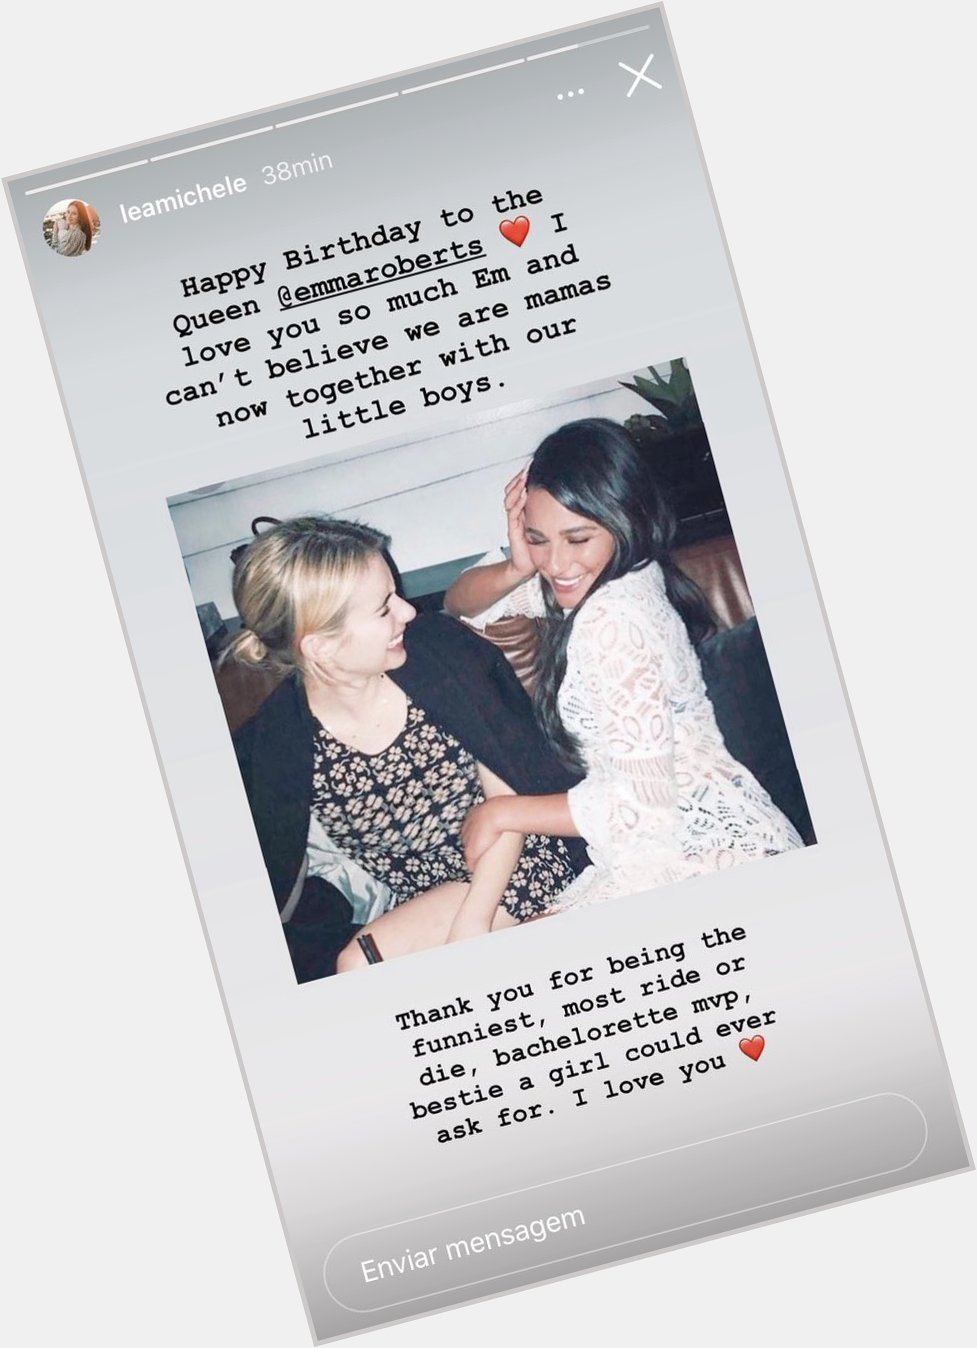 Lea Michele parabenizando a Emma Roberts, já falamos que amamos uma amizade verdadeira?
Happy Bday   